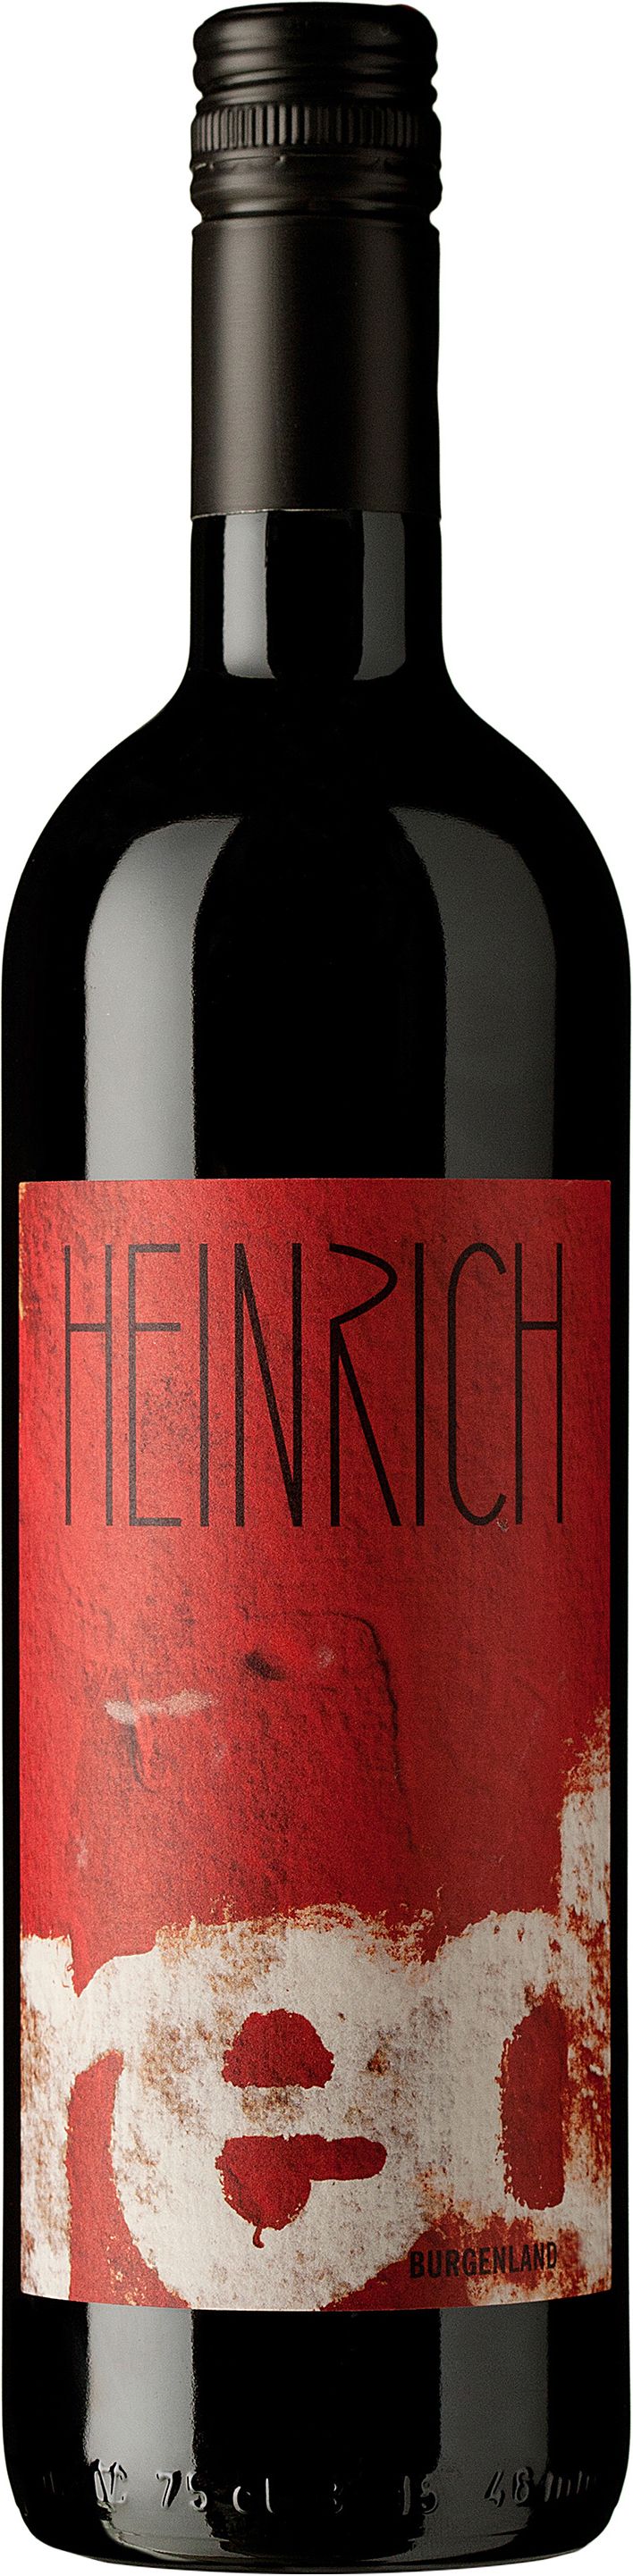 Heinrich, Red, 2013